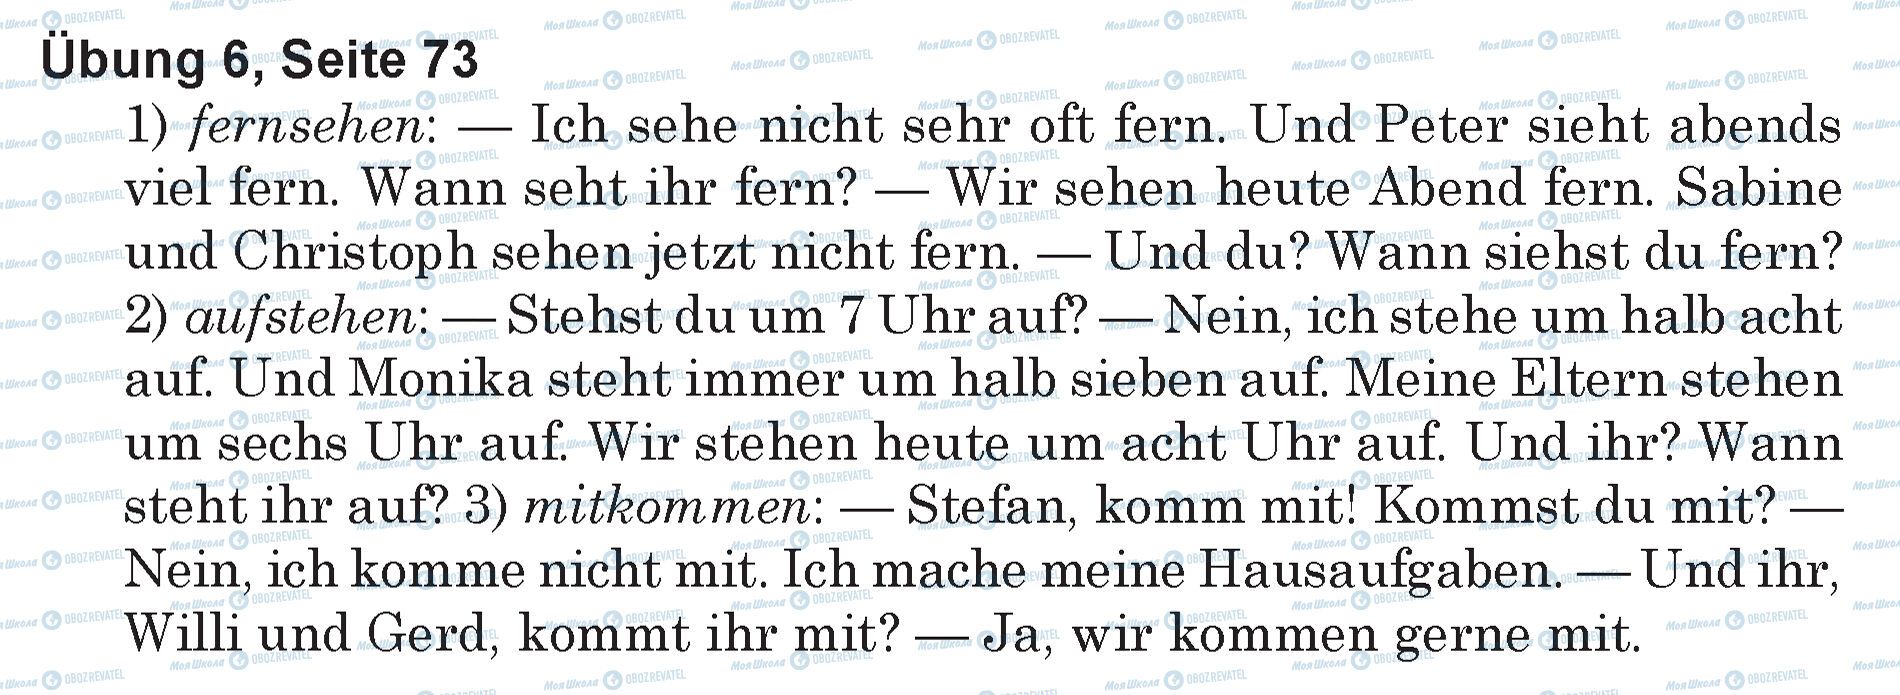 ГДЗ Німецька мова 5 клас сторінка Ubung 6, Seite 73